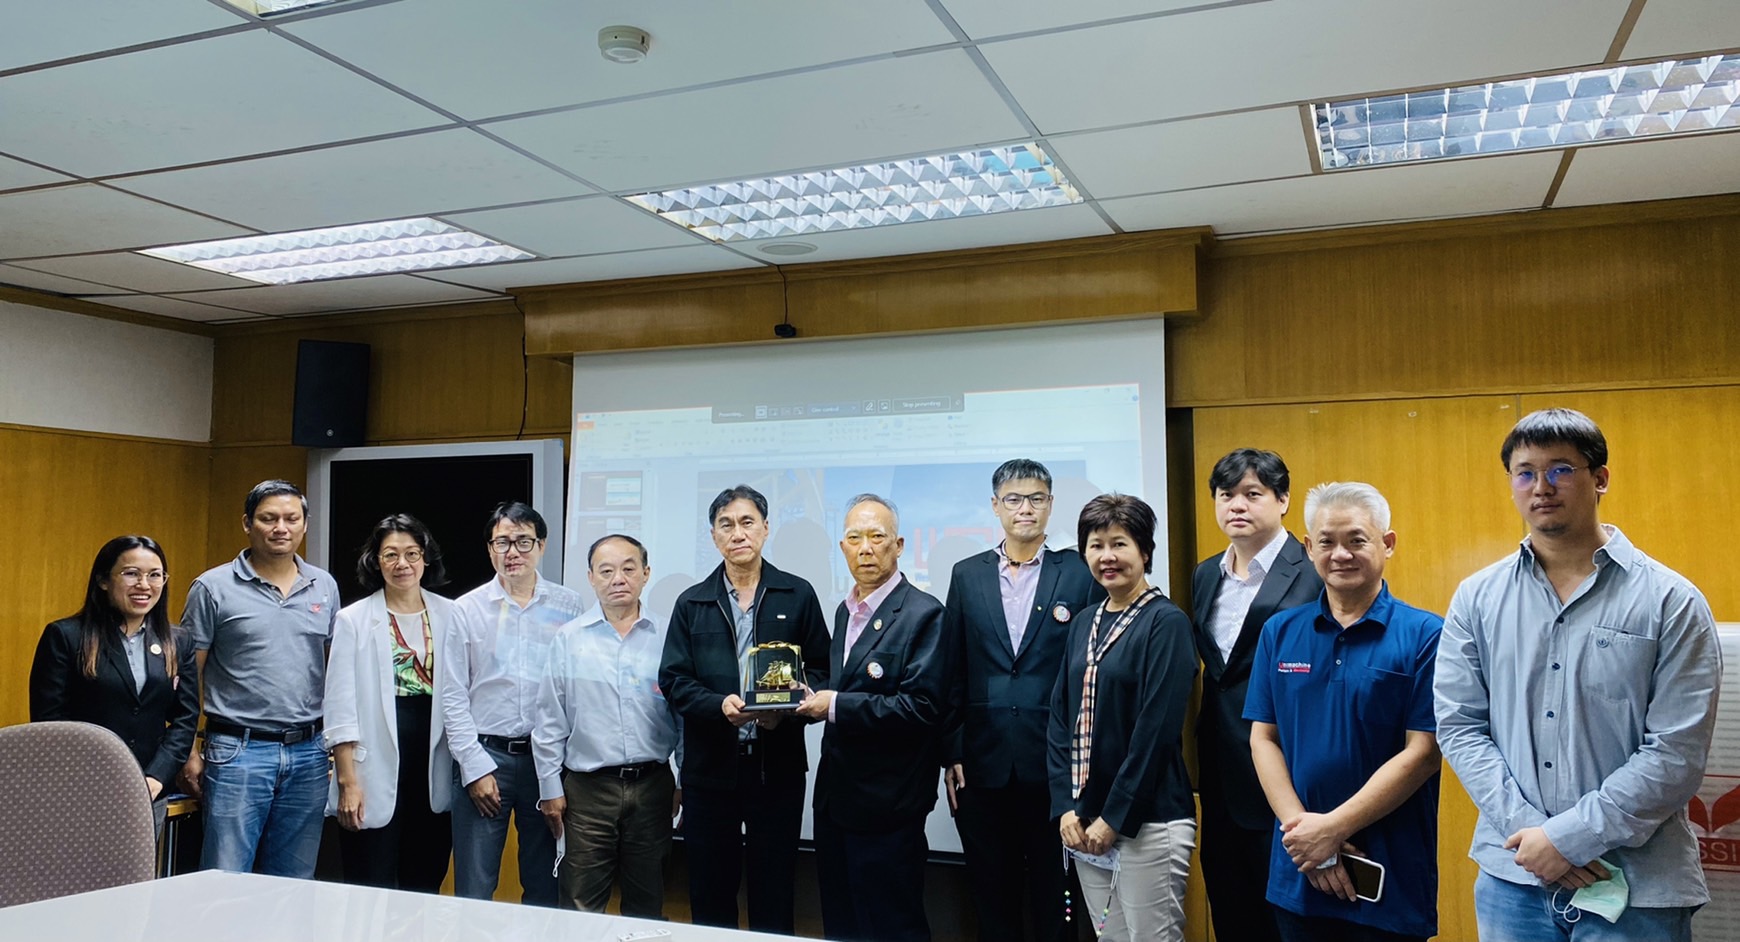 คลัสเตอร์ระบบราง Thai Subcon เข้าพบประชุมหารือความร่วมมือ ด้านชิ้นส่วน เเละ Parts Localization ในอุตสาหกรรมระบบราง ร่วมกับ บริษัท เวสท์โคสท์ เอ็นจิเนียริ่ง จำกัด